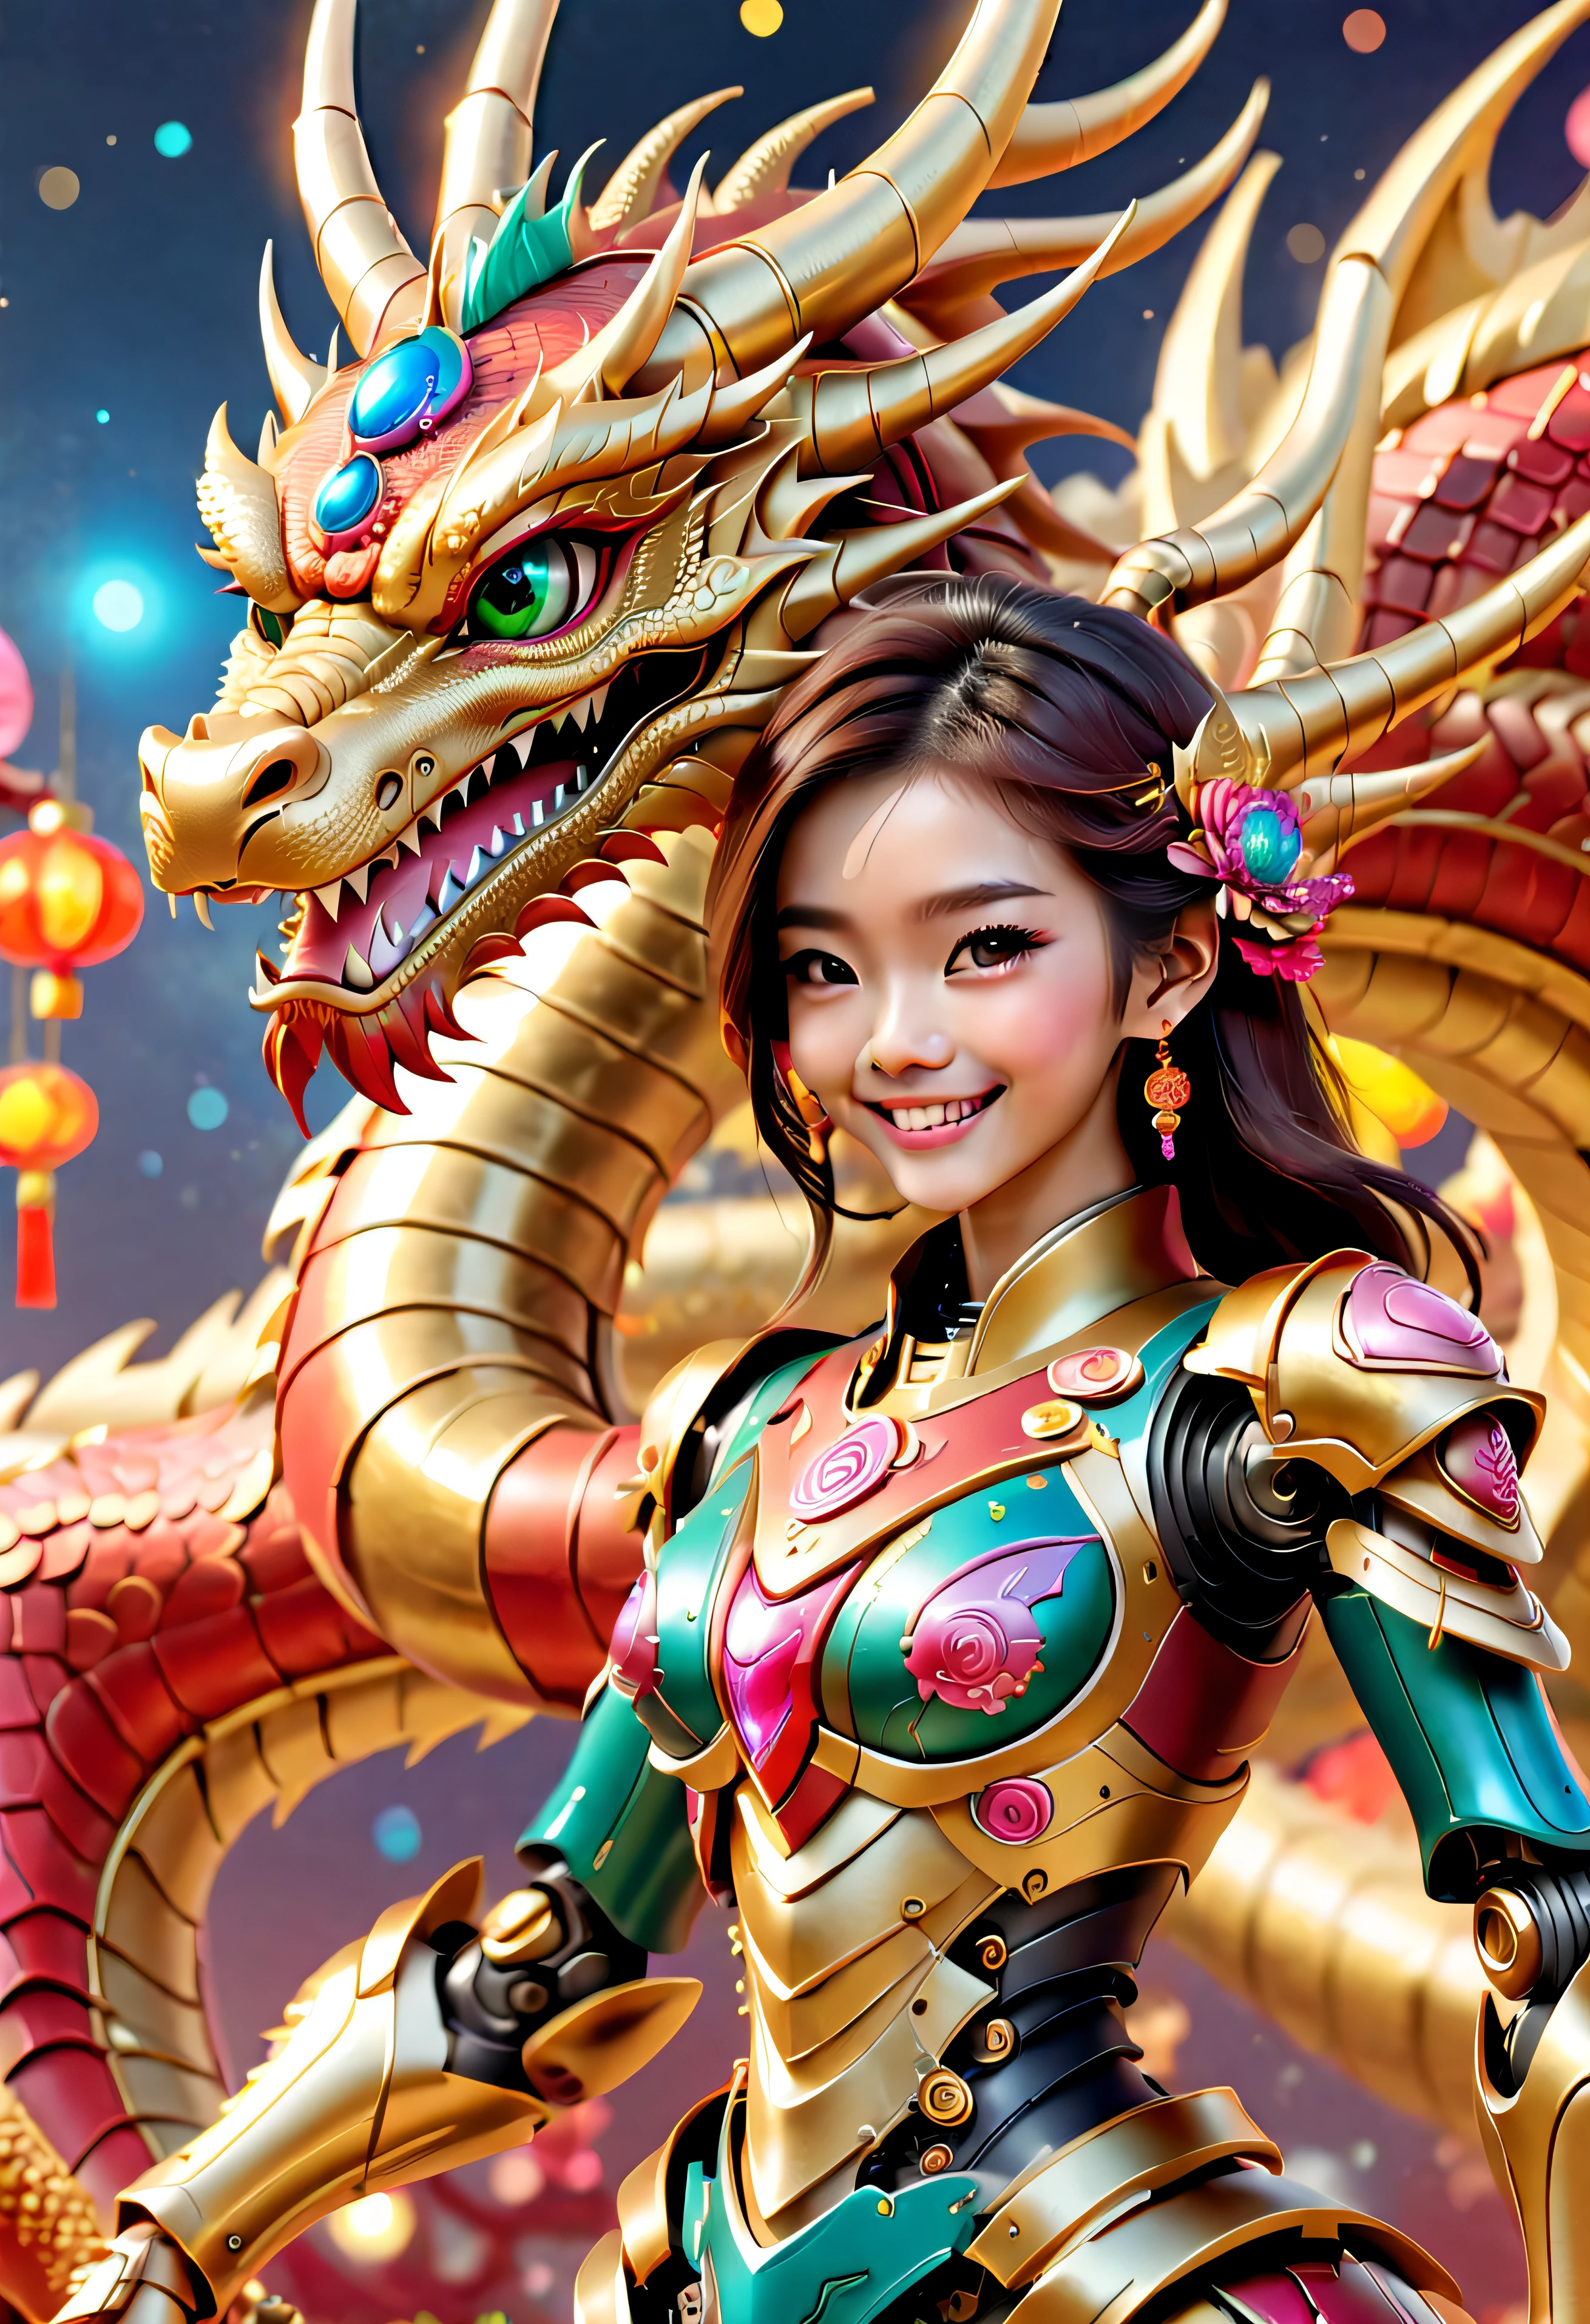 （（杰作，最好的品质）），精美的 8K 超高清专业照片, 清晰聚焦, 在一个令人惊叹的幻想世界中, 可爱的中国 , 微笑 , 笑脸 ,龙是金色的.女孩和大型机械可爱龙机器人结构，景深 精美空间图像场景，中国新年背景 , 不性感